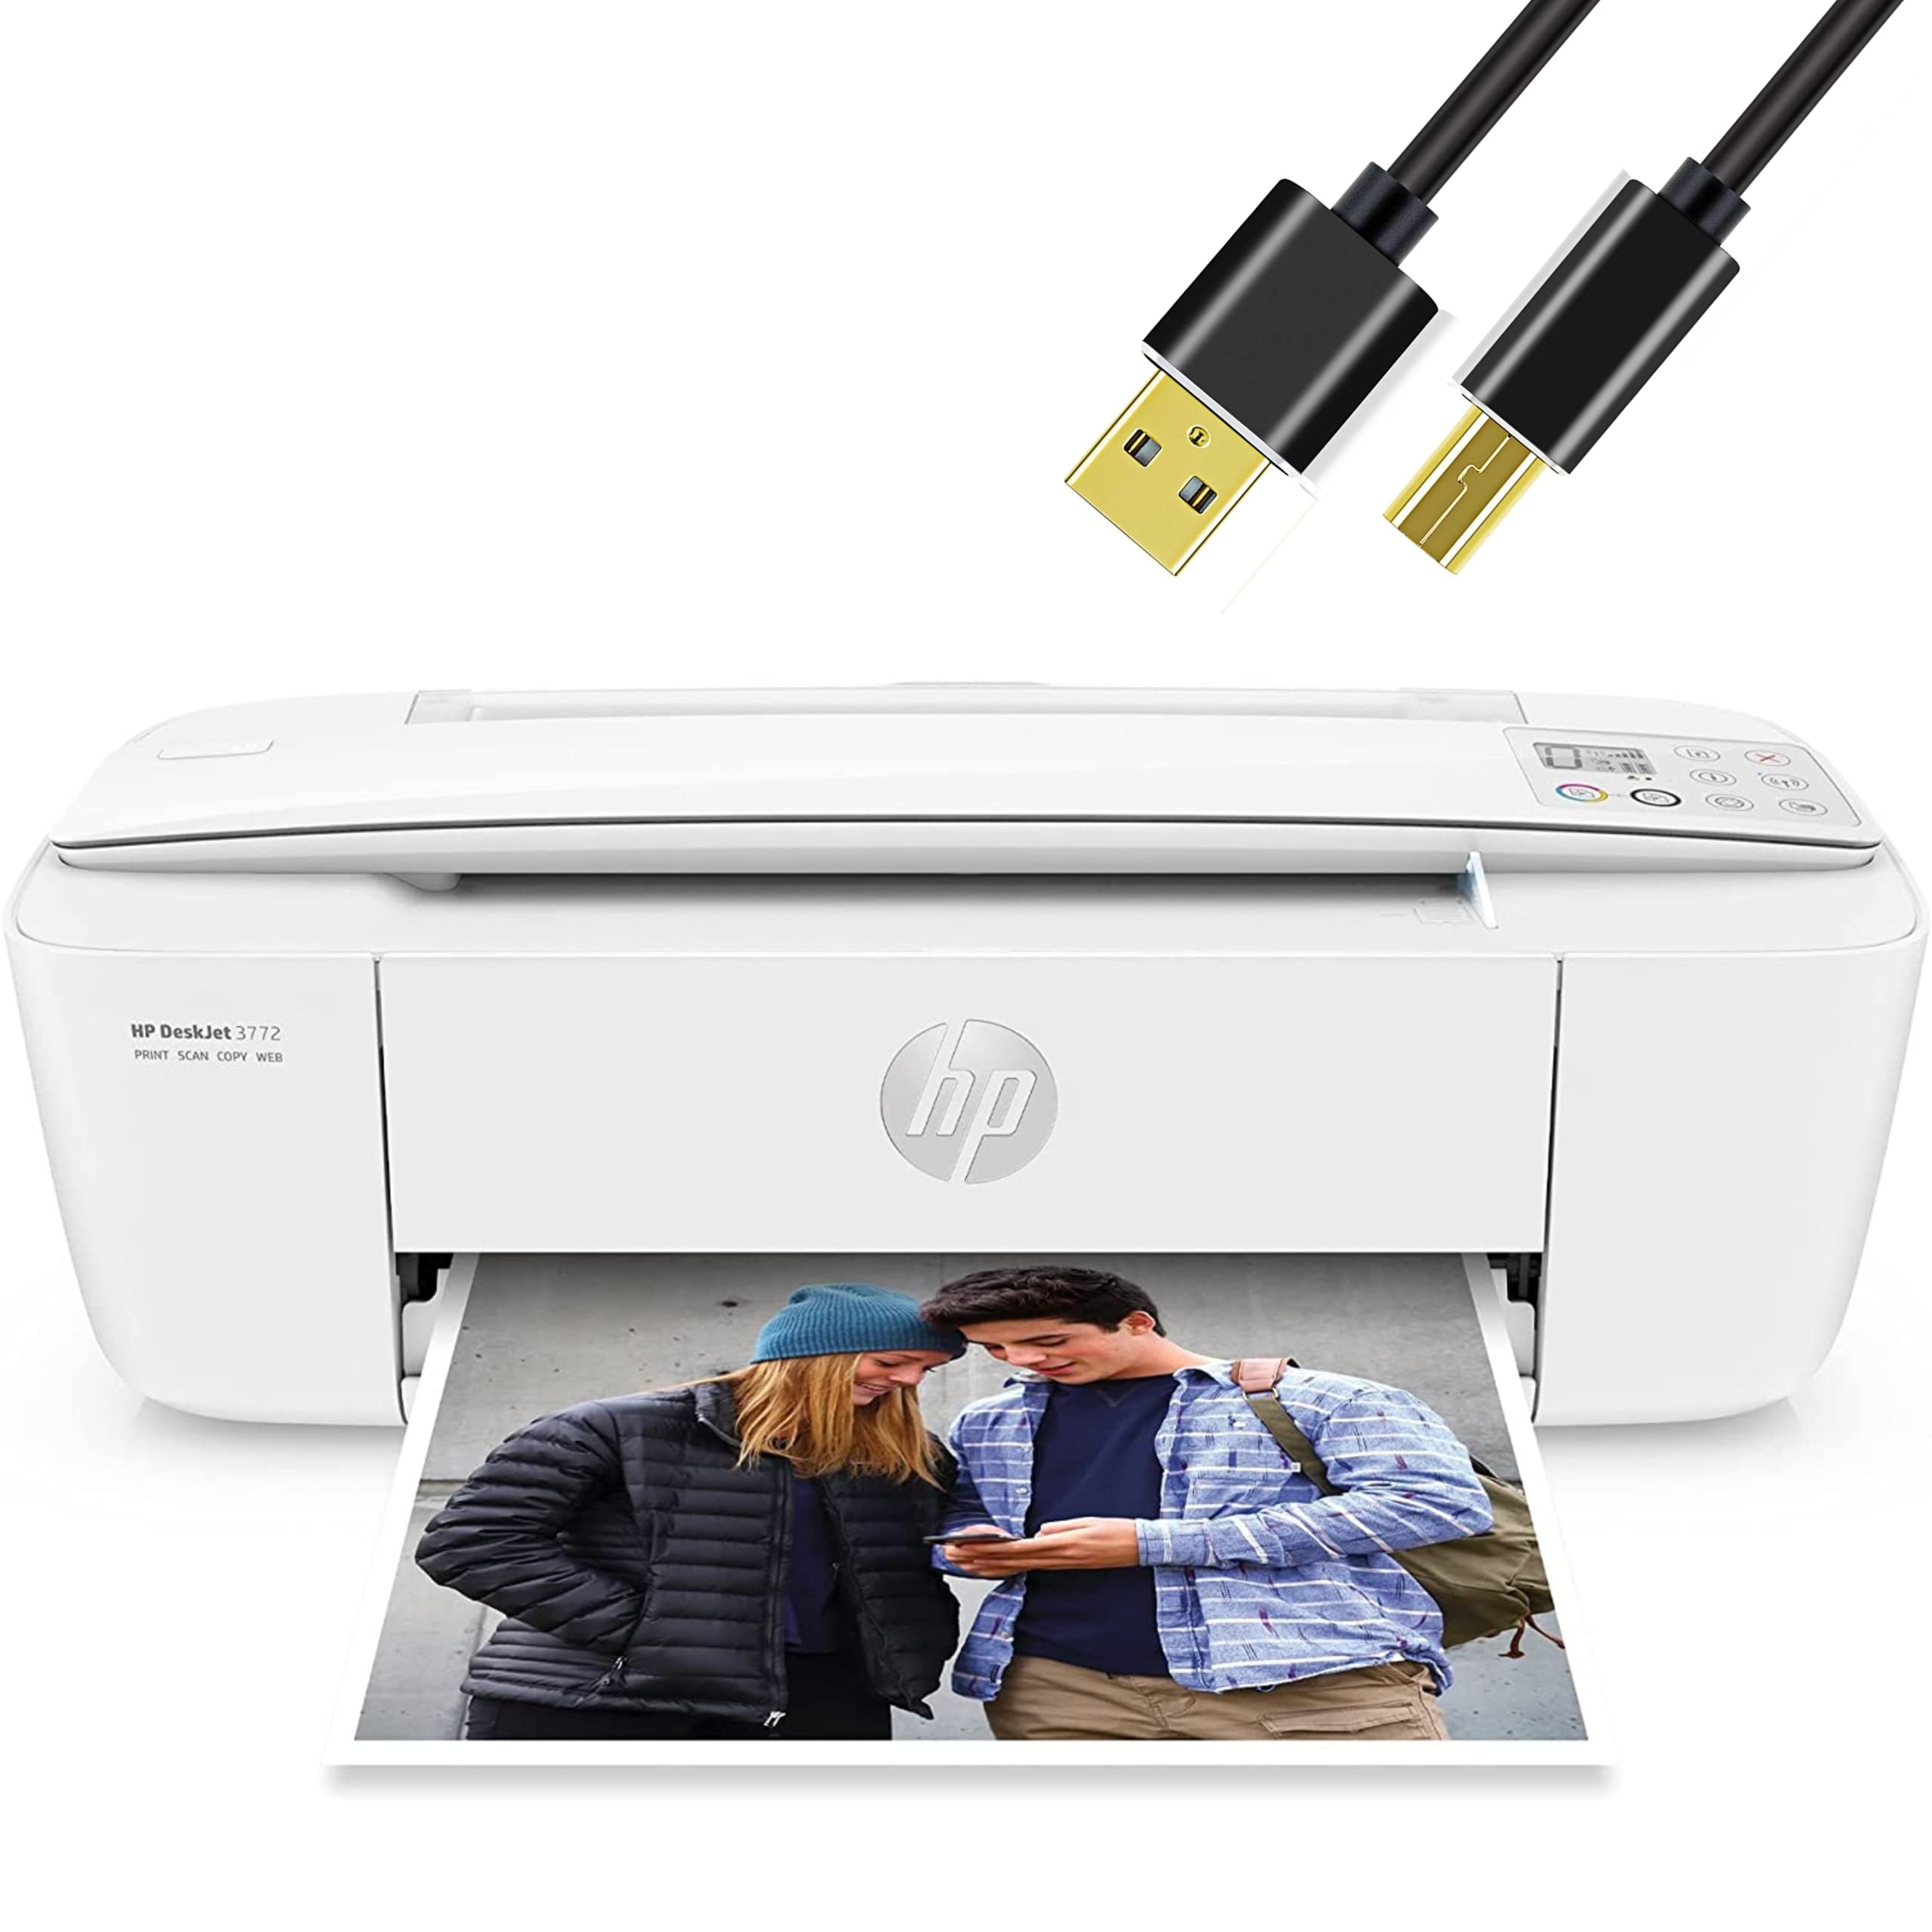 HP H -P DeskJet 无线彩色喷墨打印机一体机，带 LCD 显示屏 - 打印、扫描、复印和移动打印 超紧凑型，带 6 英尺打印机电缆